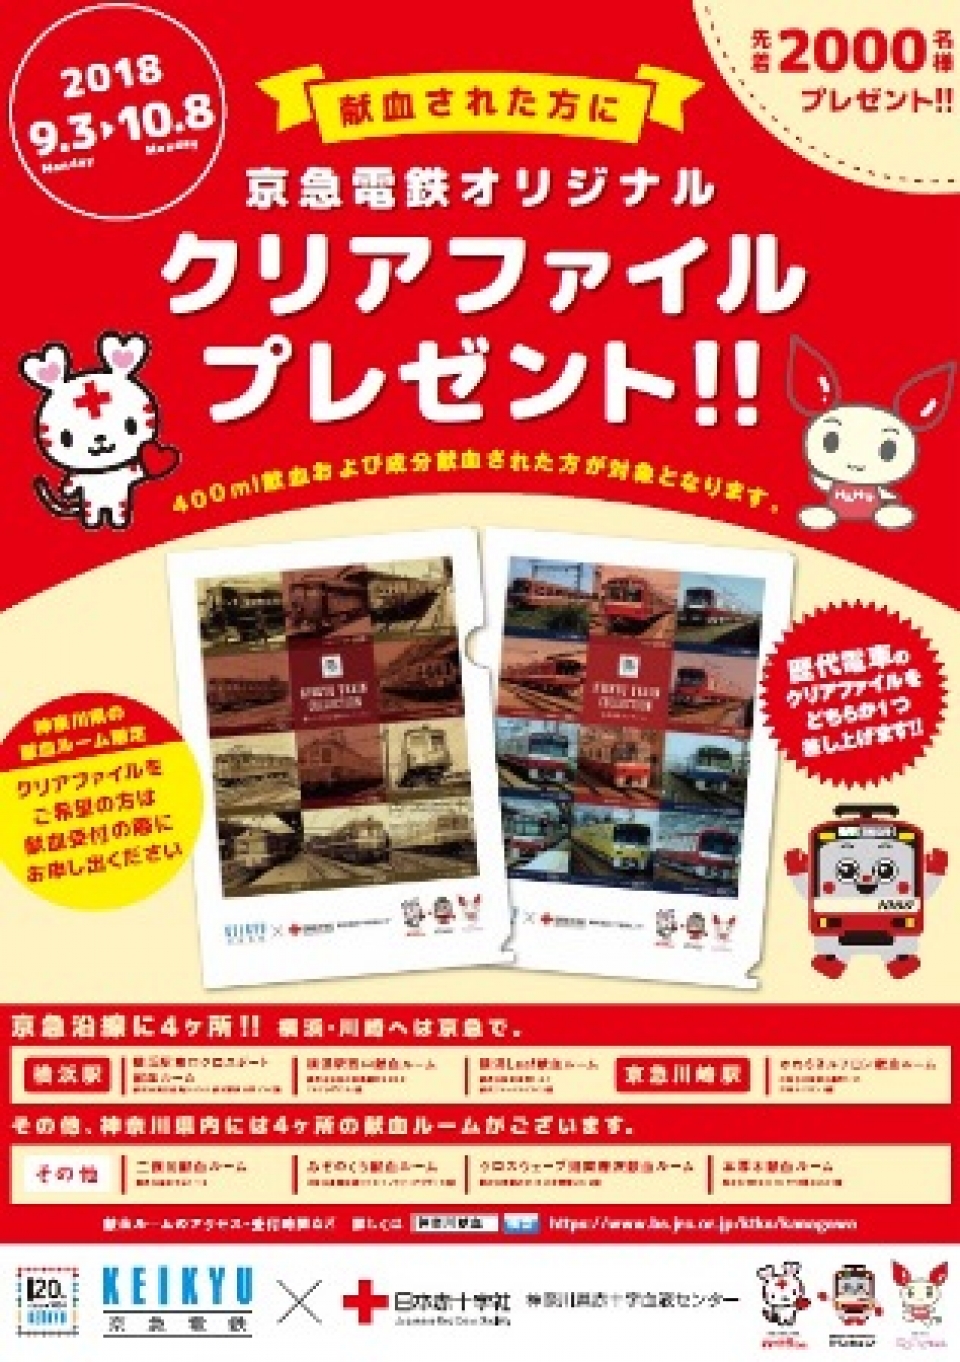 京急電鉄 日本赤十字とコラボ オリジナルクリアファイルをプレゼント Raillab ニュース レイルラボ